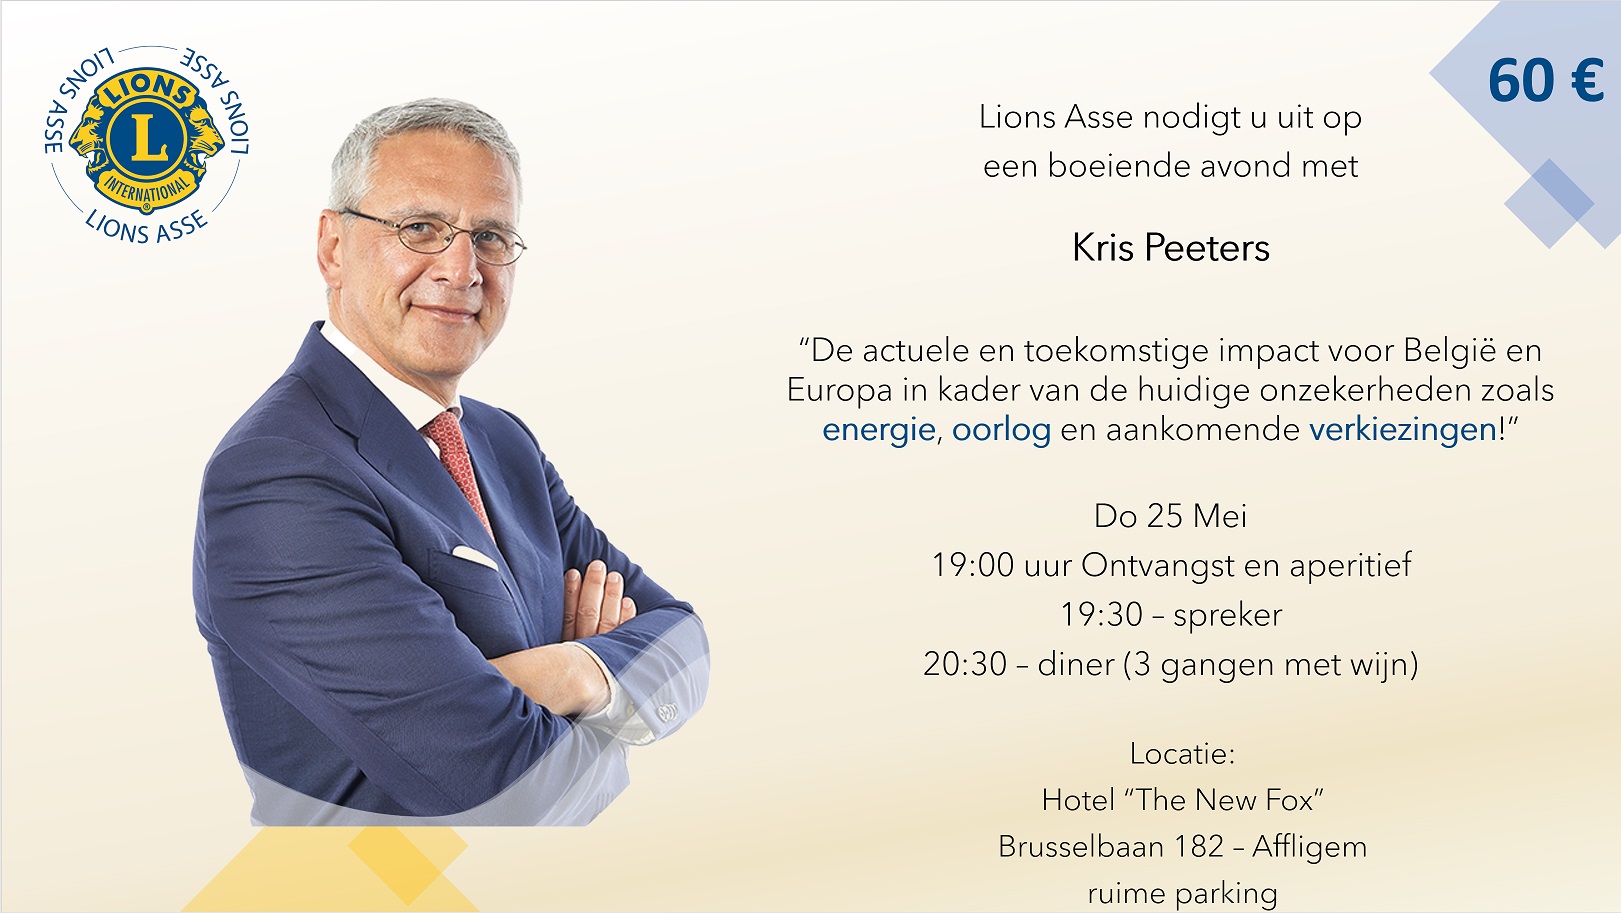 flyer Open vergadering Lions Asse, met spreker: KRIS PEETERS (top politicus)